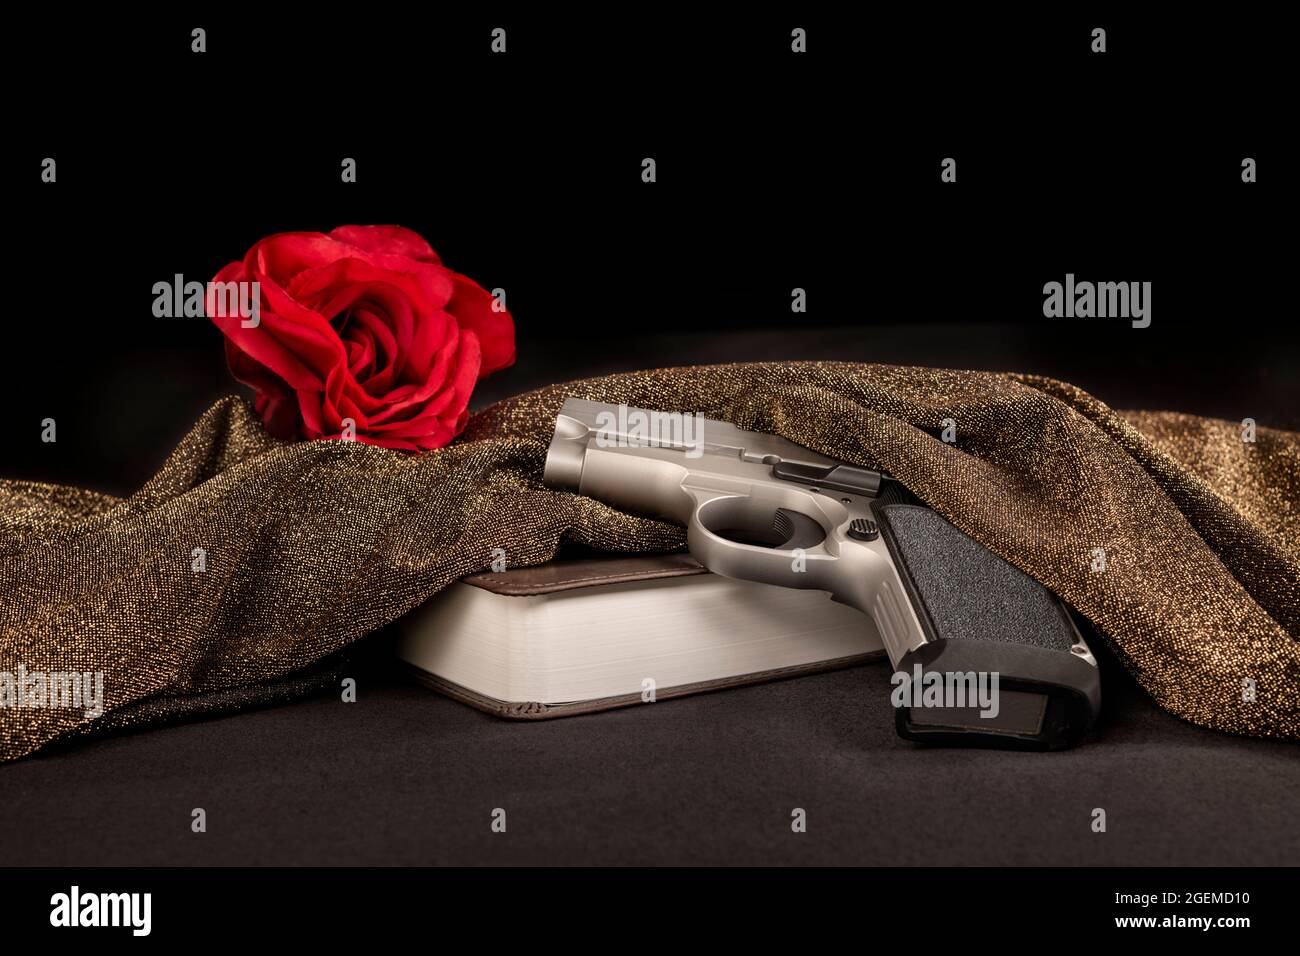 Come parte di un'organizzazione criminale, questa immagine rappresenta una rosa rossa simbolica dietro una bibbia e una pistola, un rituale pre-uccisione degli uomini colpiti mafia. Foto Stock